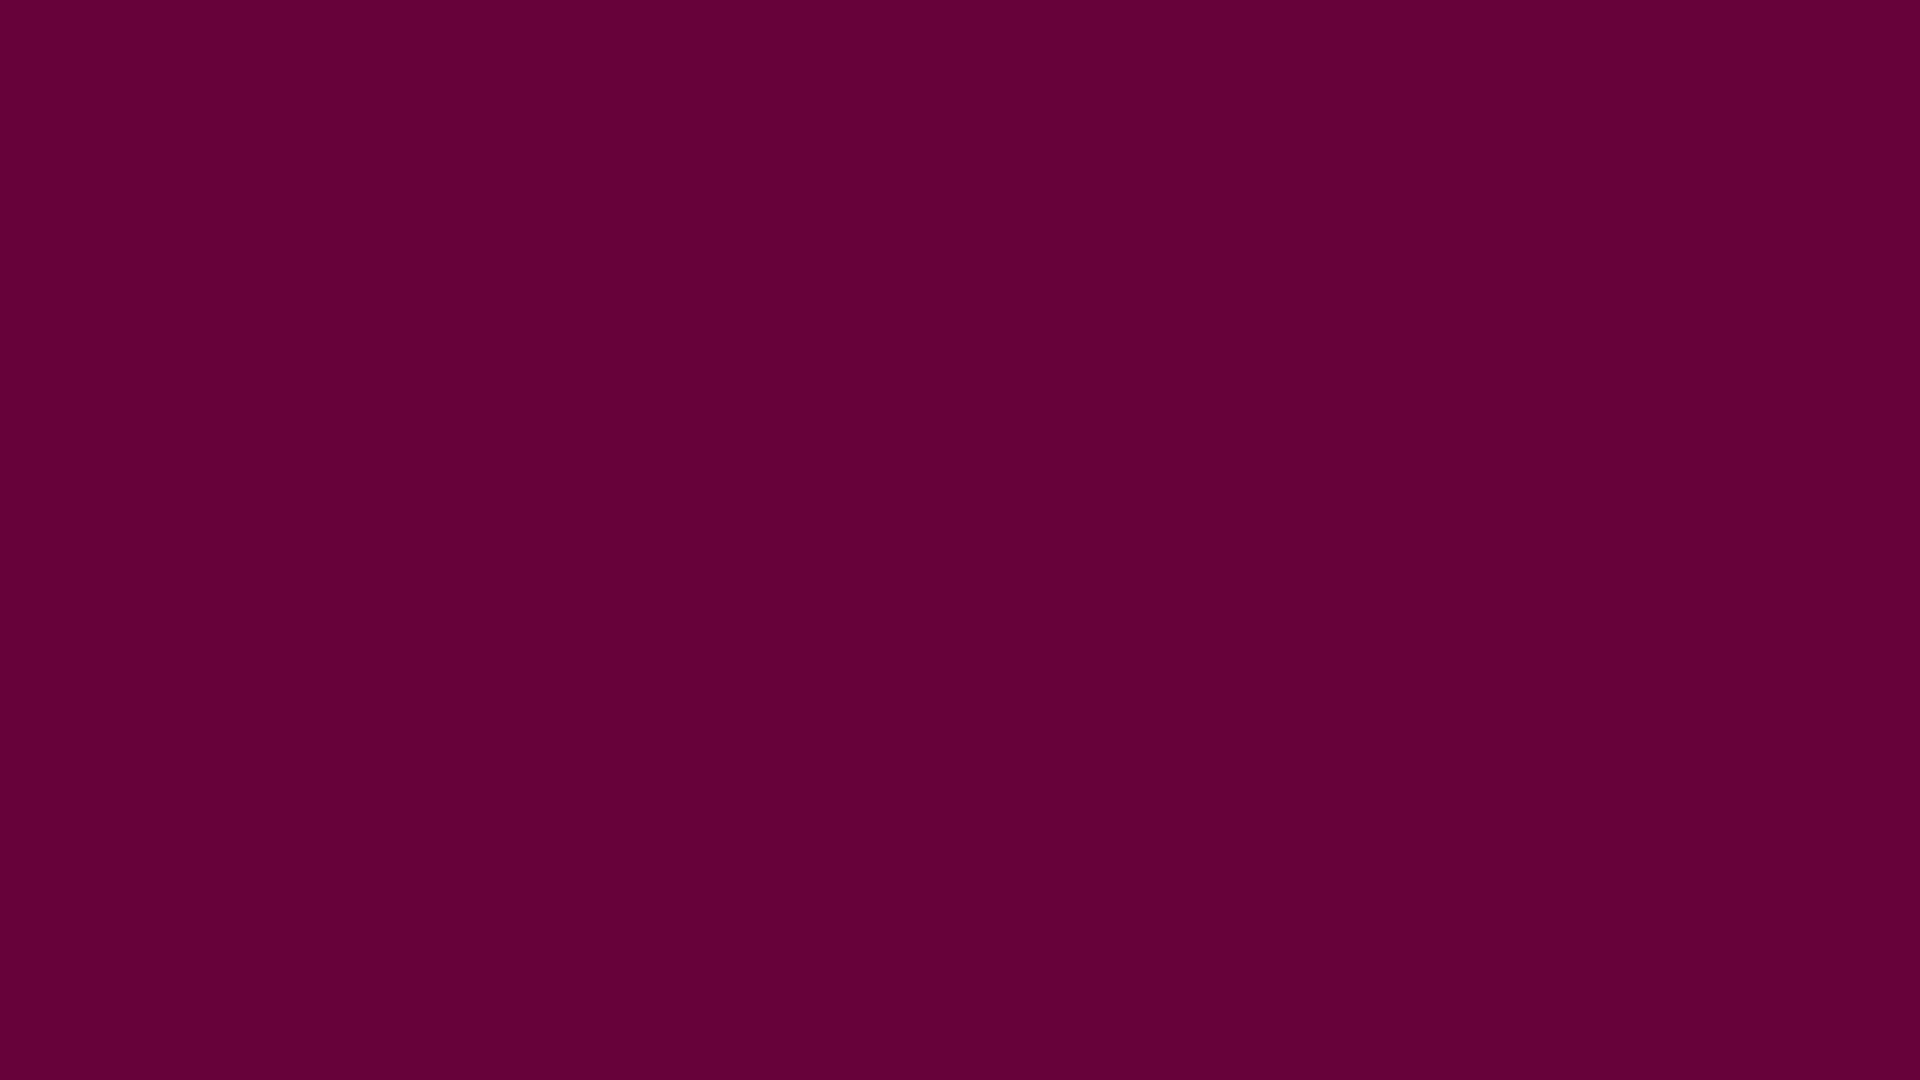 Ricco,colore Viola Solido. Sfondo